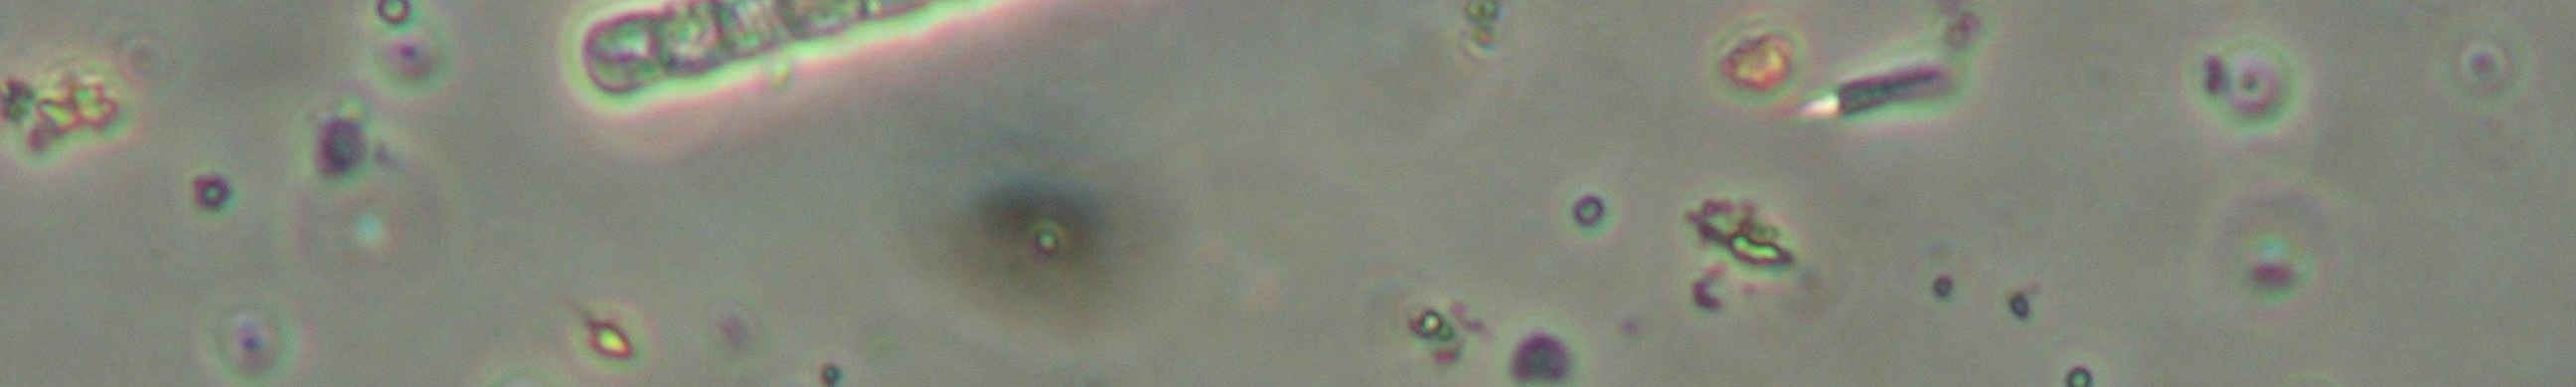 5. Beispiele von mikroskopischen Aufnahmen verschiedener toxinbildender Blaualgen Anabaena lemmermannii Microcystis aeruginosa Müllroser See vom 04.06.2007 W.